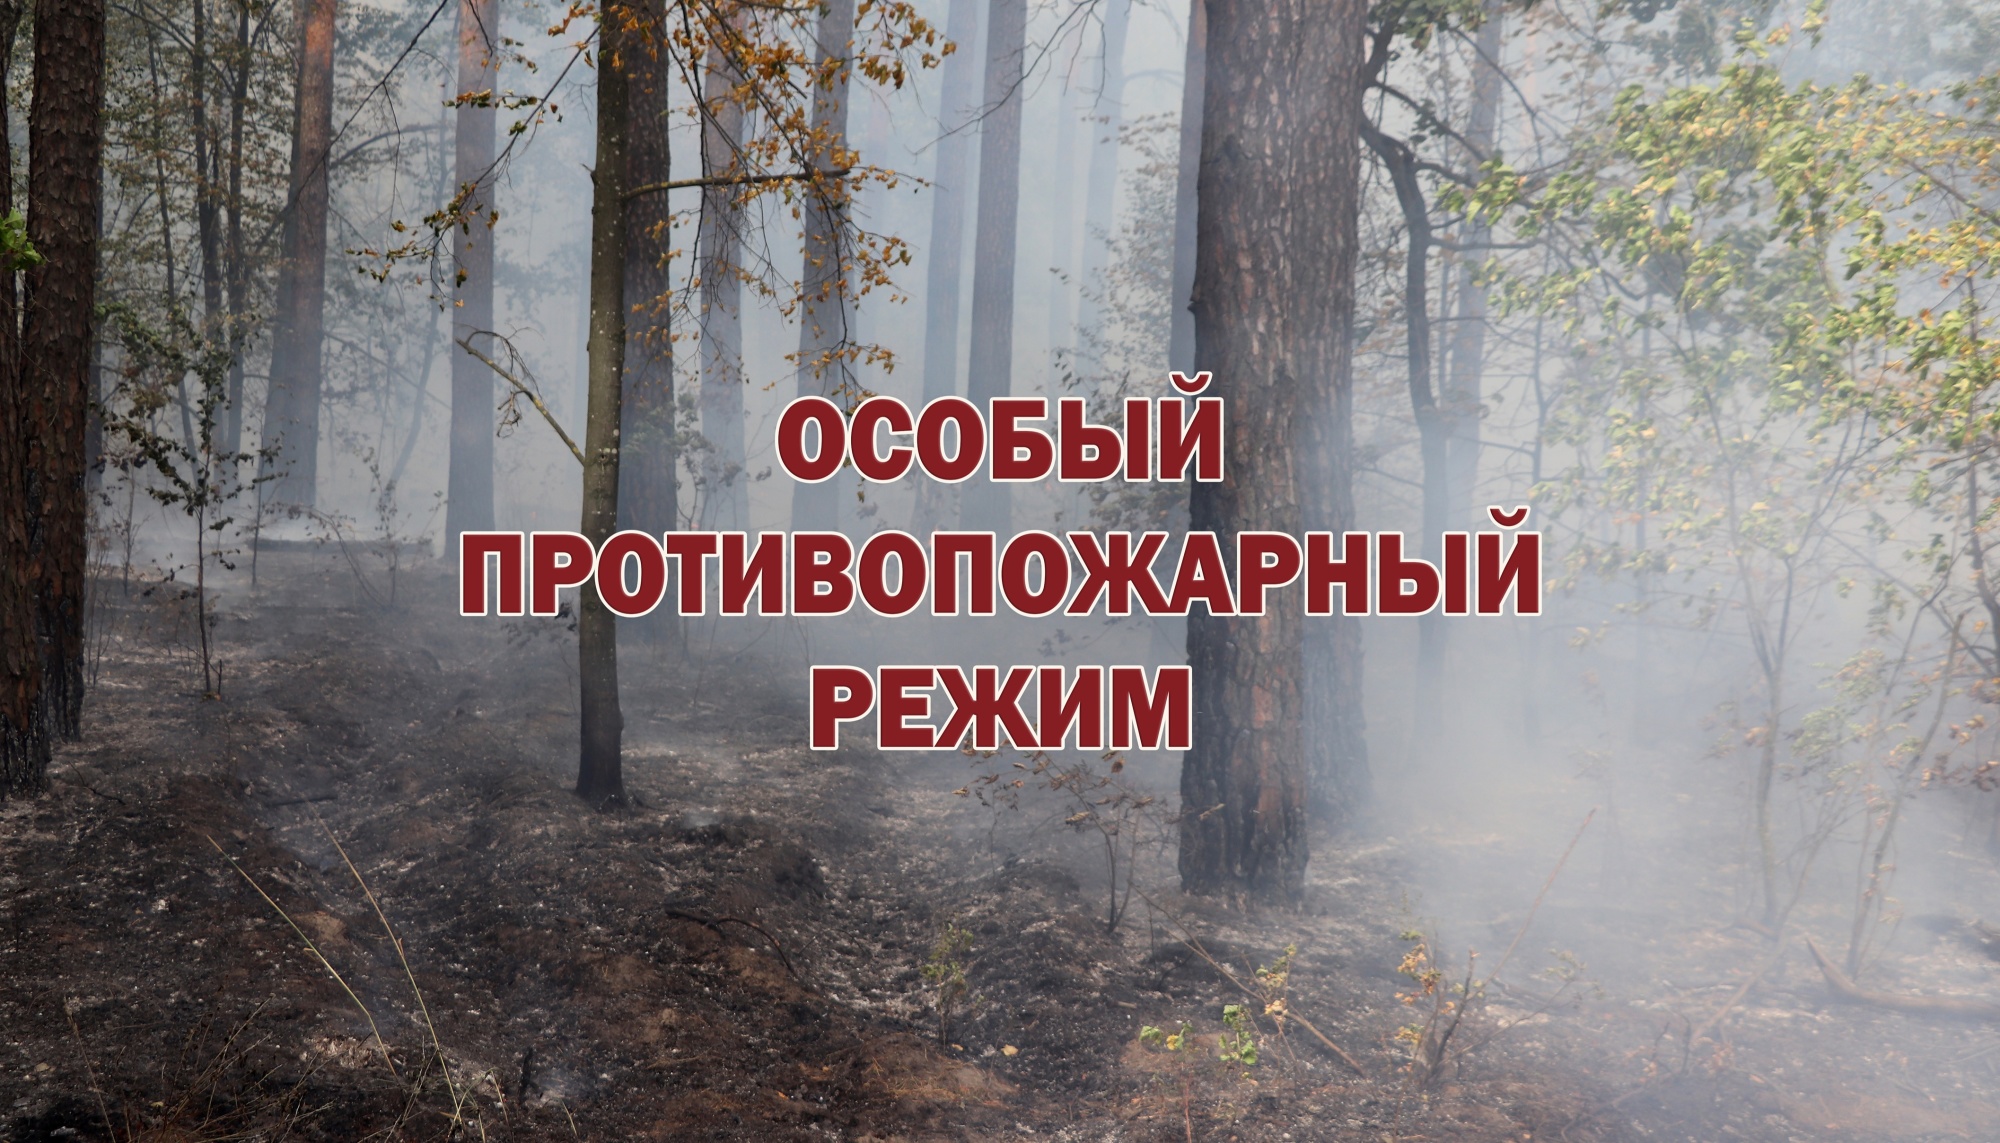 Что нужно знать об особом противопожарном режиме на территории города Севастополя